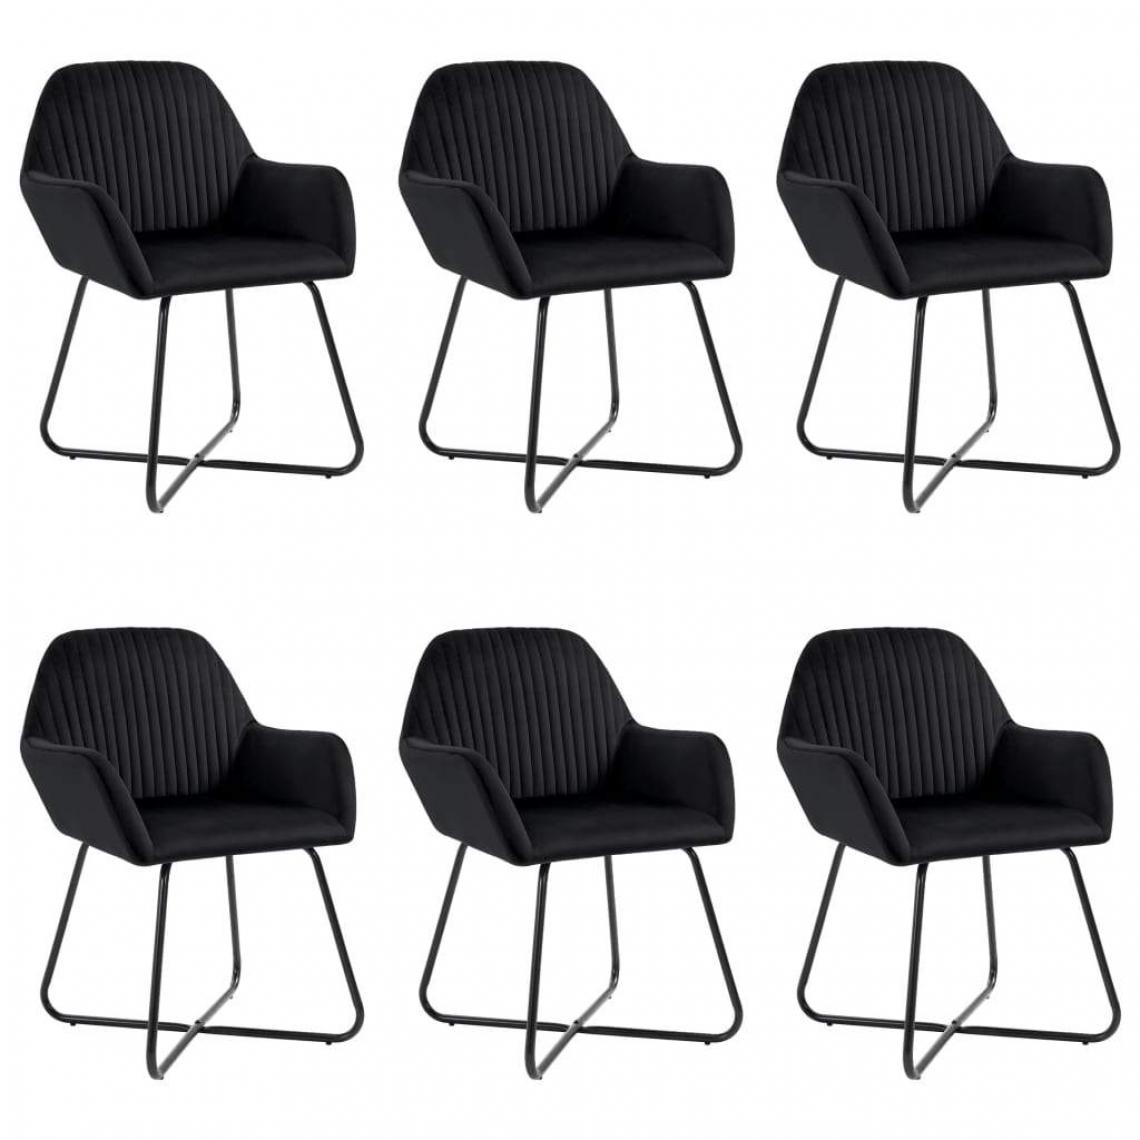 Decoshop26 - Lot de 6 chaises de salle à manger cuisine design moderne velours noir CDS022740 - Chaises